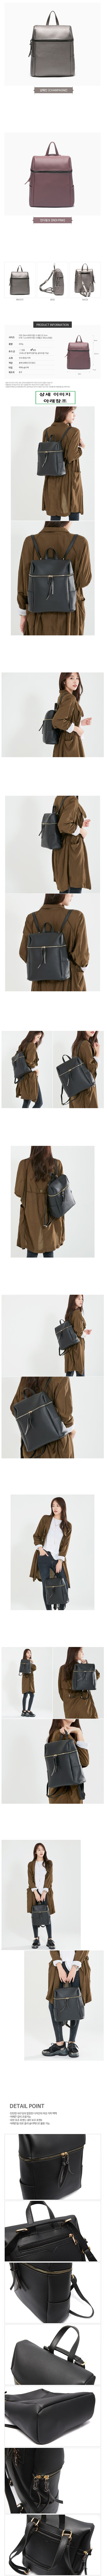     ϸ   ,Women Leather Backpacks Shoulder Bags Daily clean design,ҳ?̷????,ҳԪΫ?ЫëϡЫëѫë?ǫ?ᷪު